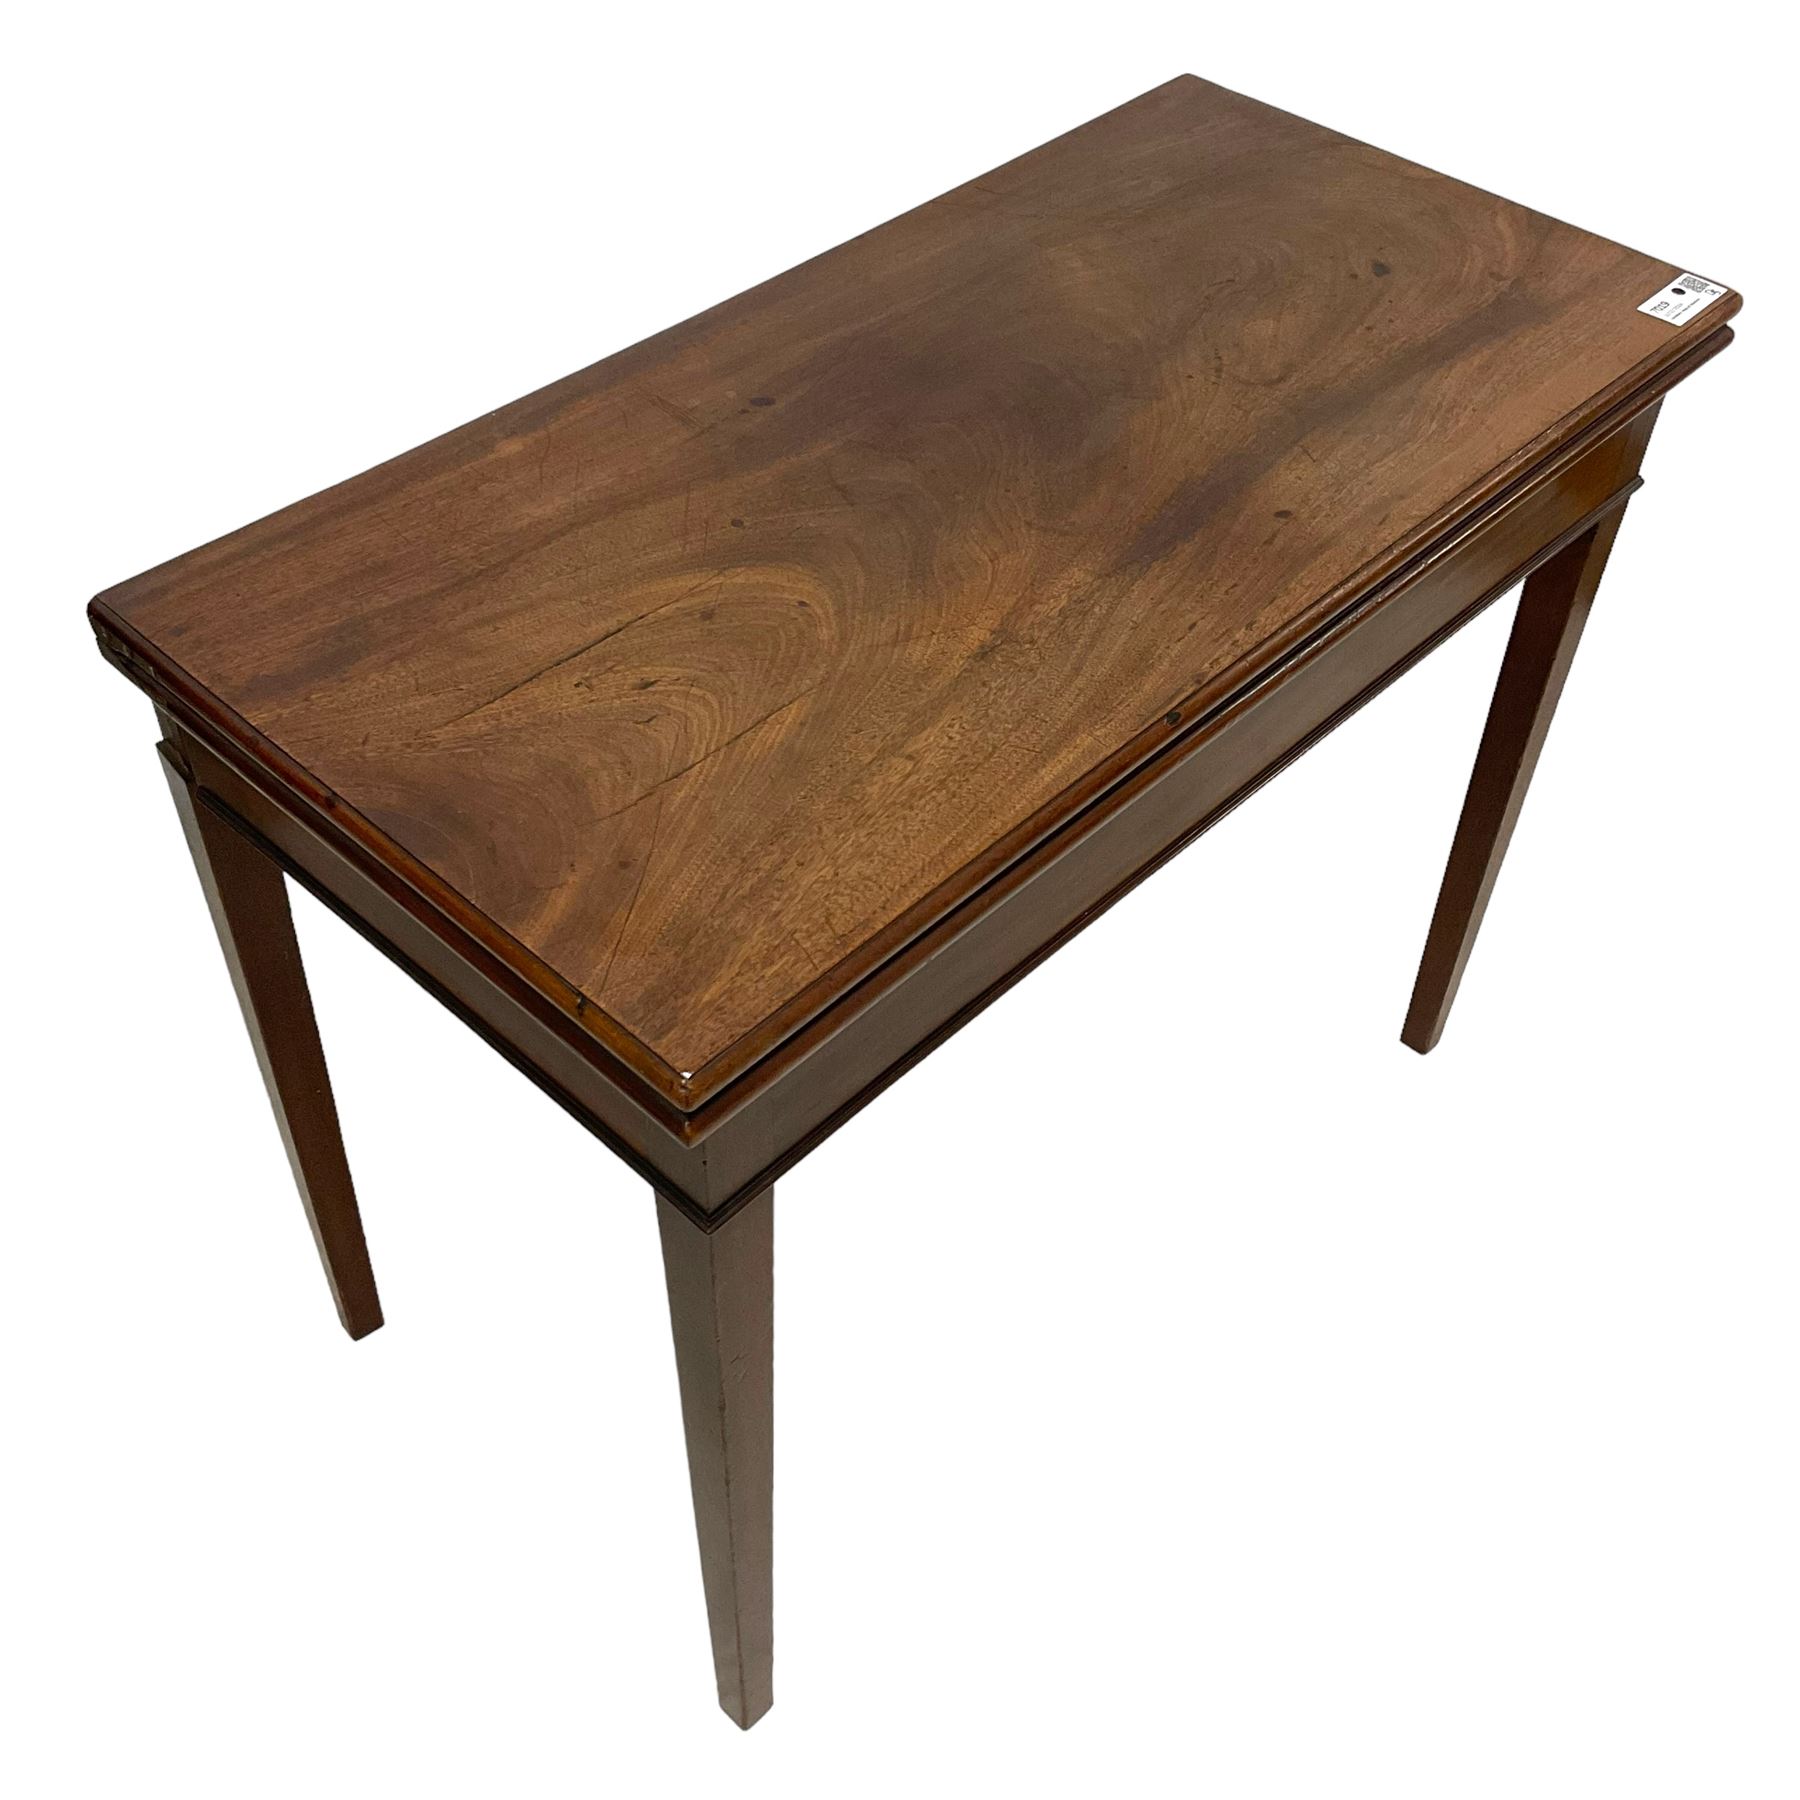 George III mahogany tea table - Image 2 of 6